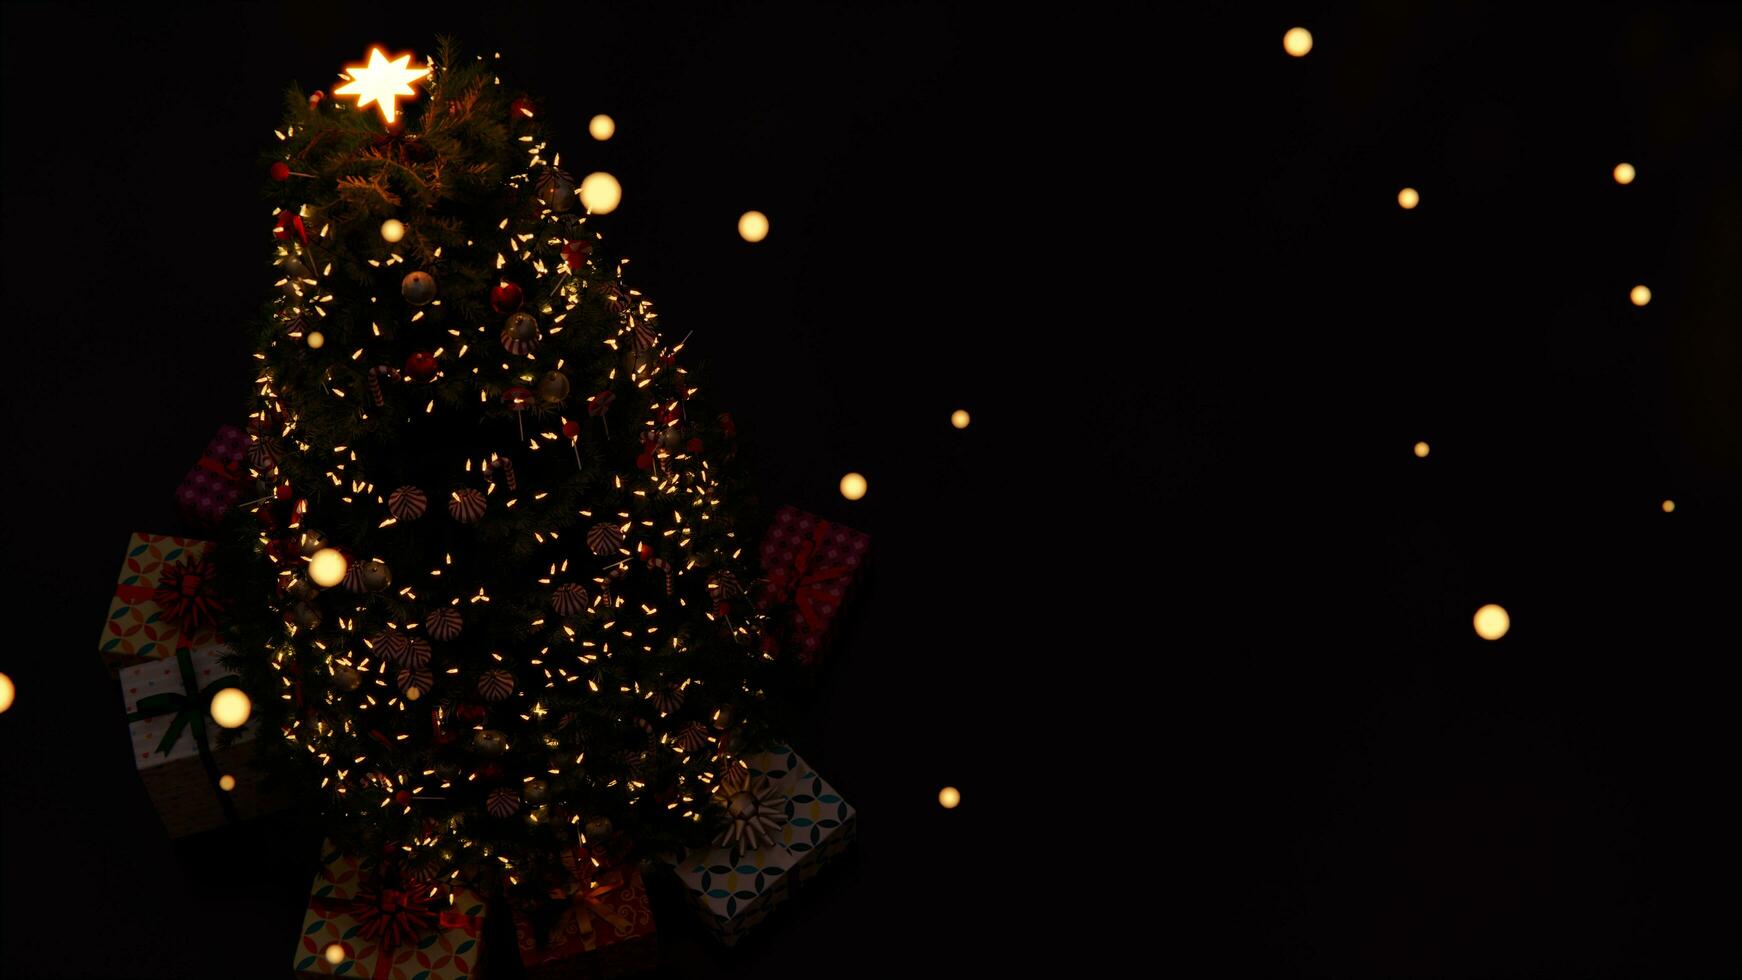 3d obra de arte ,Navidad árbol decoración con luz, vaso pelota y rojo adornos en antecedentes bokeh de lado parpadeando ligero bombillas guirnaldas para familia invierno día festivo. 8k resolución foto